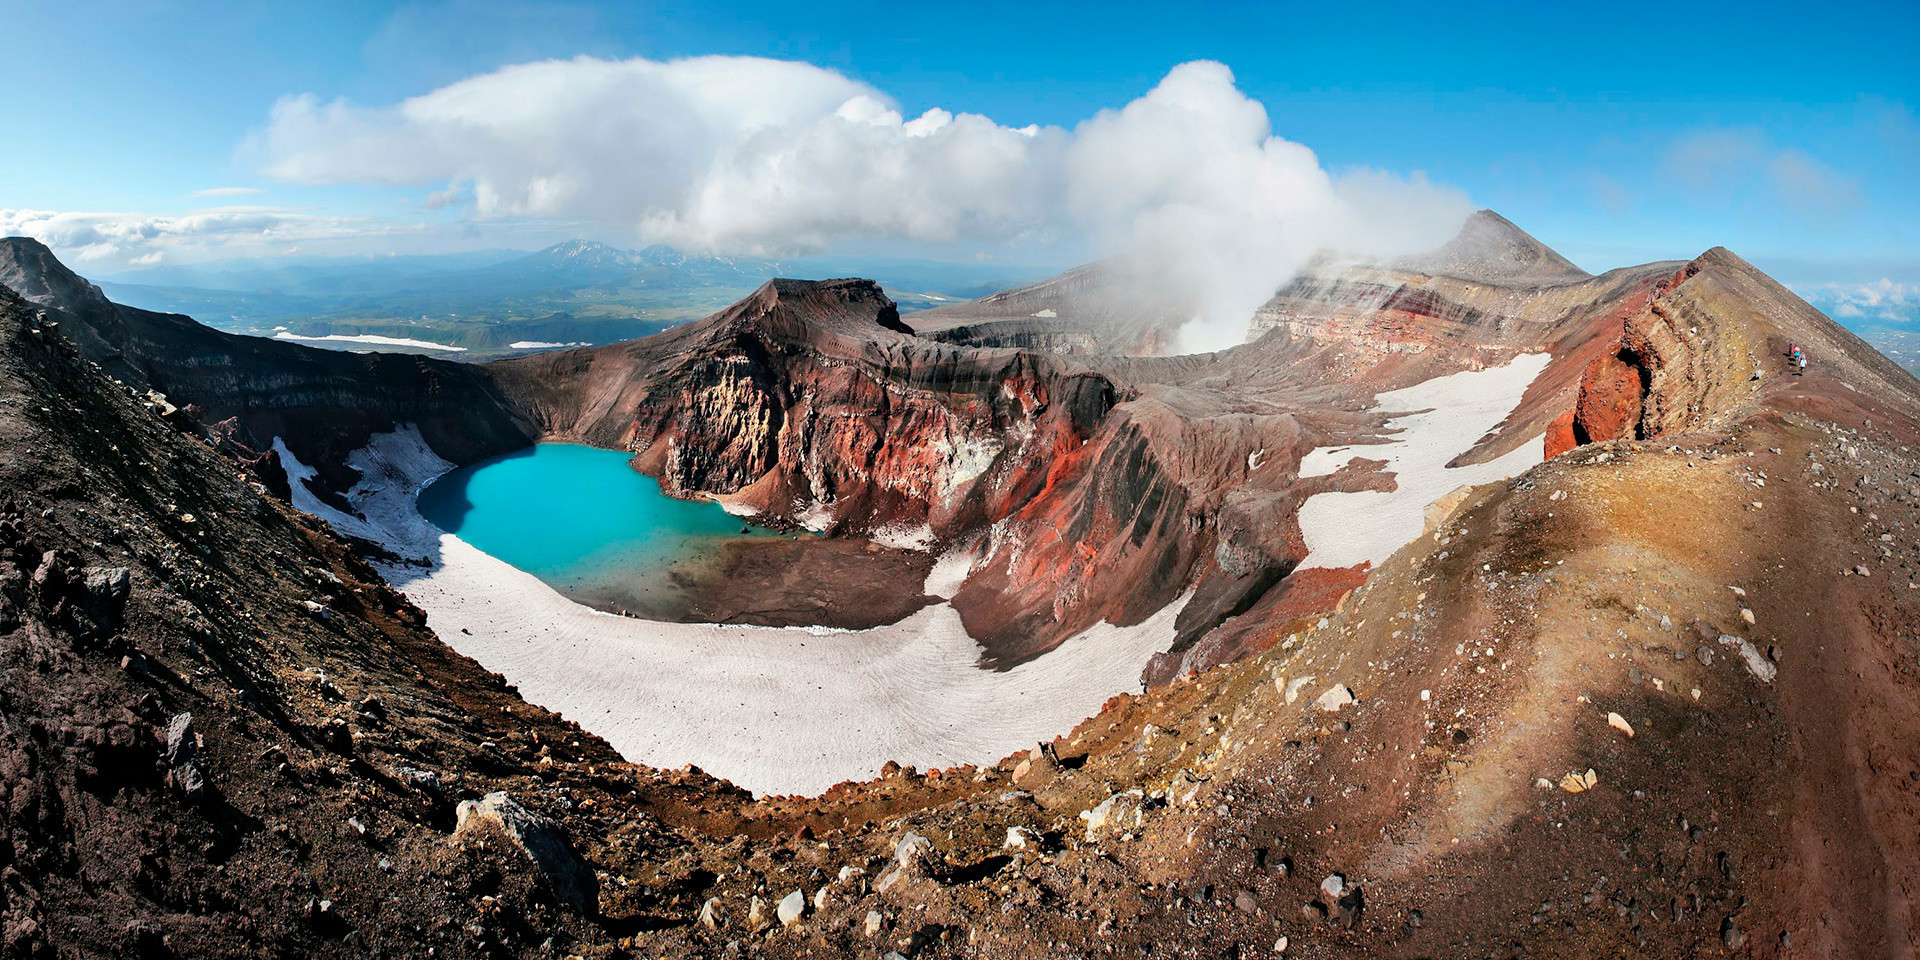 El lago Kurile es un lago de cráter situado en una gran caldera al sur de la península de Kamchatka. 